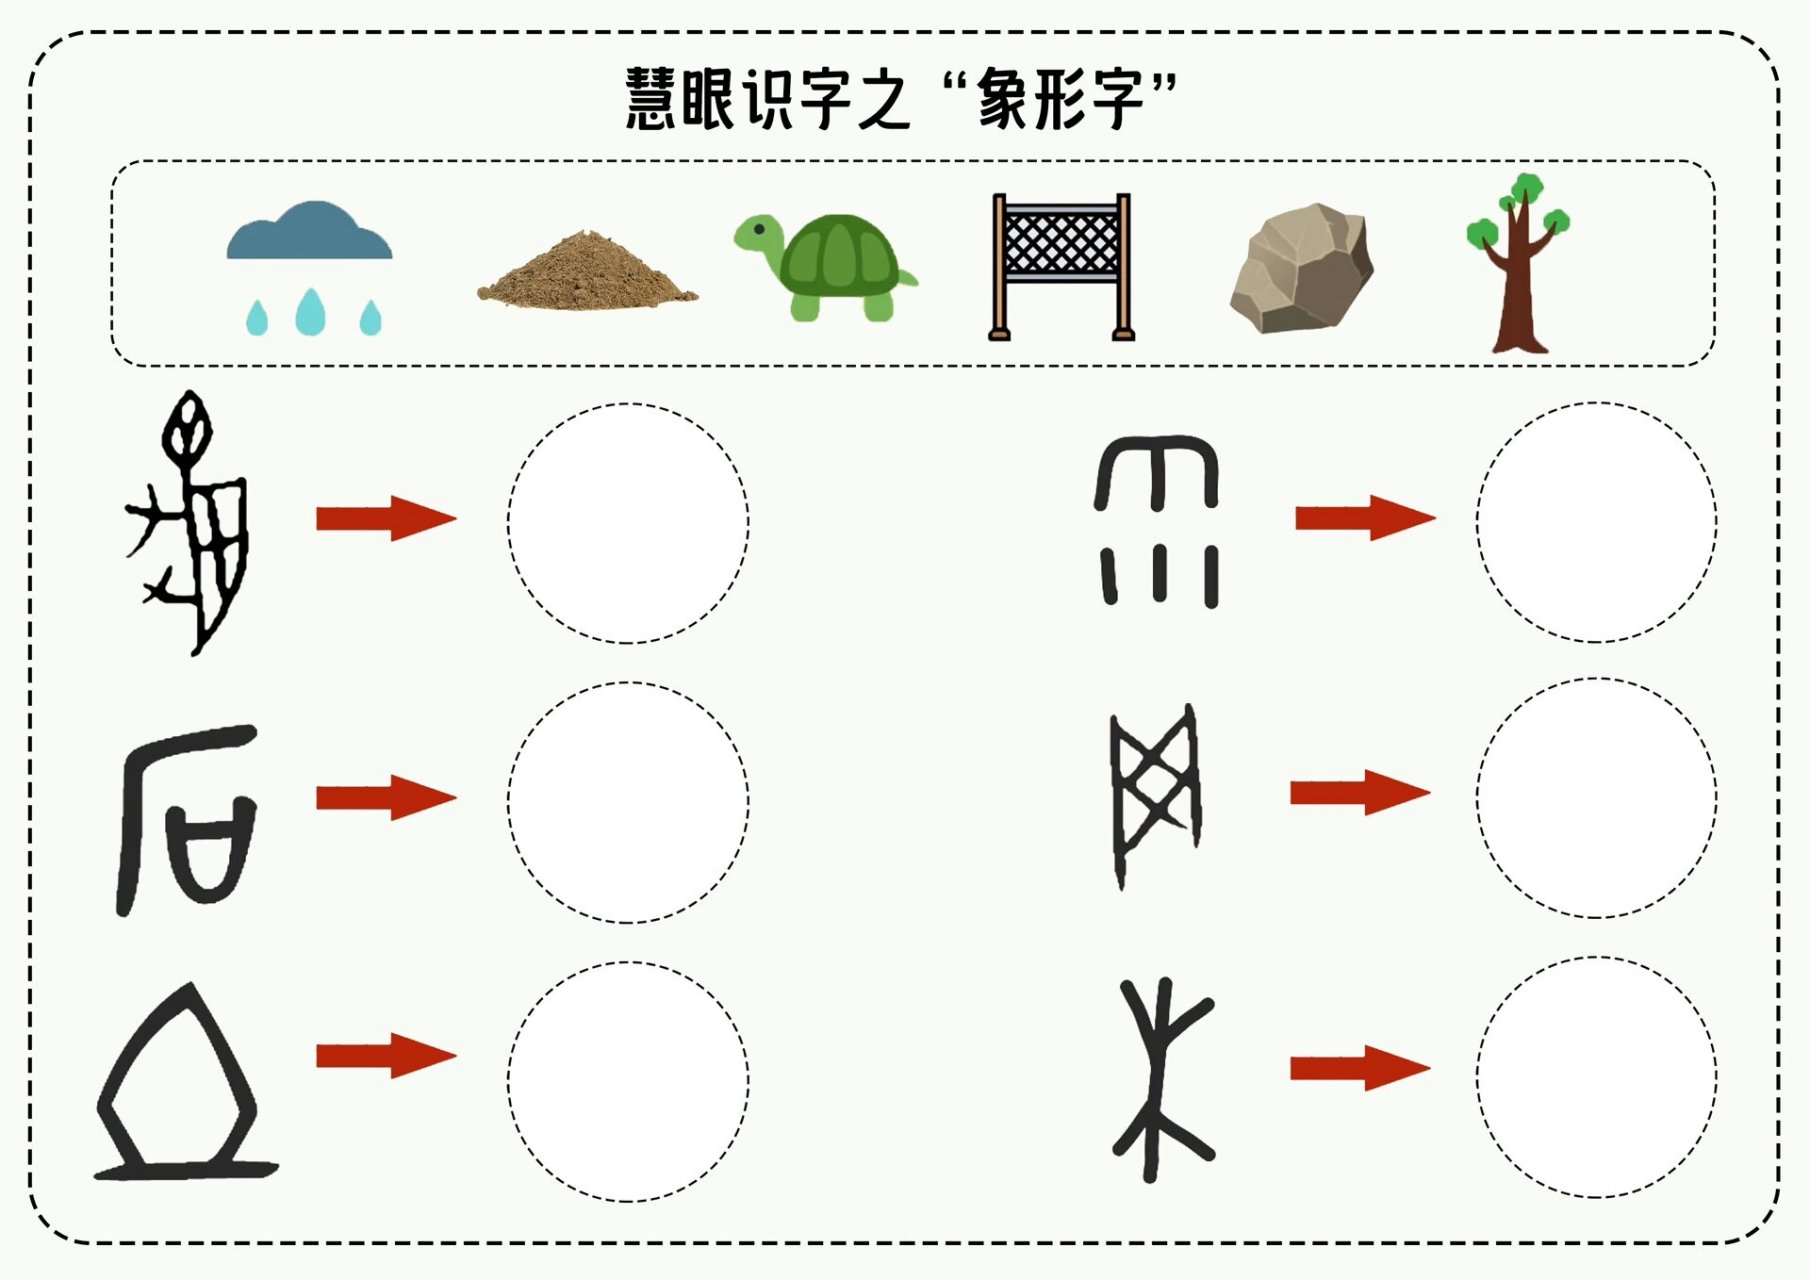 神奇的汉字之象形字题卡